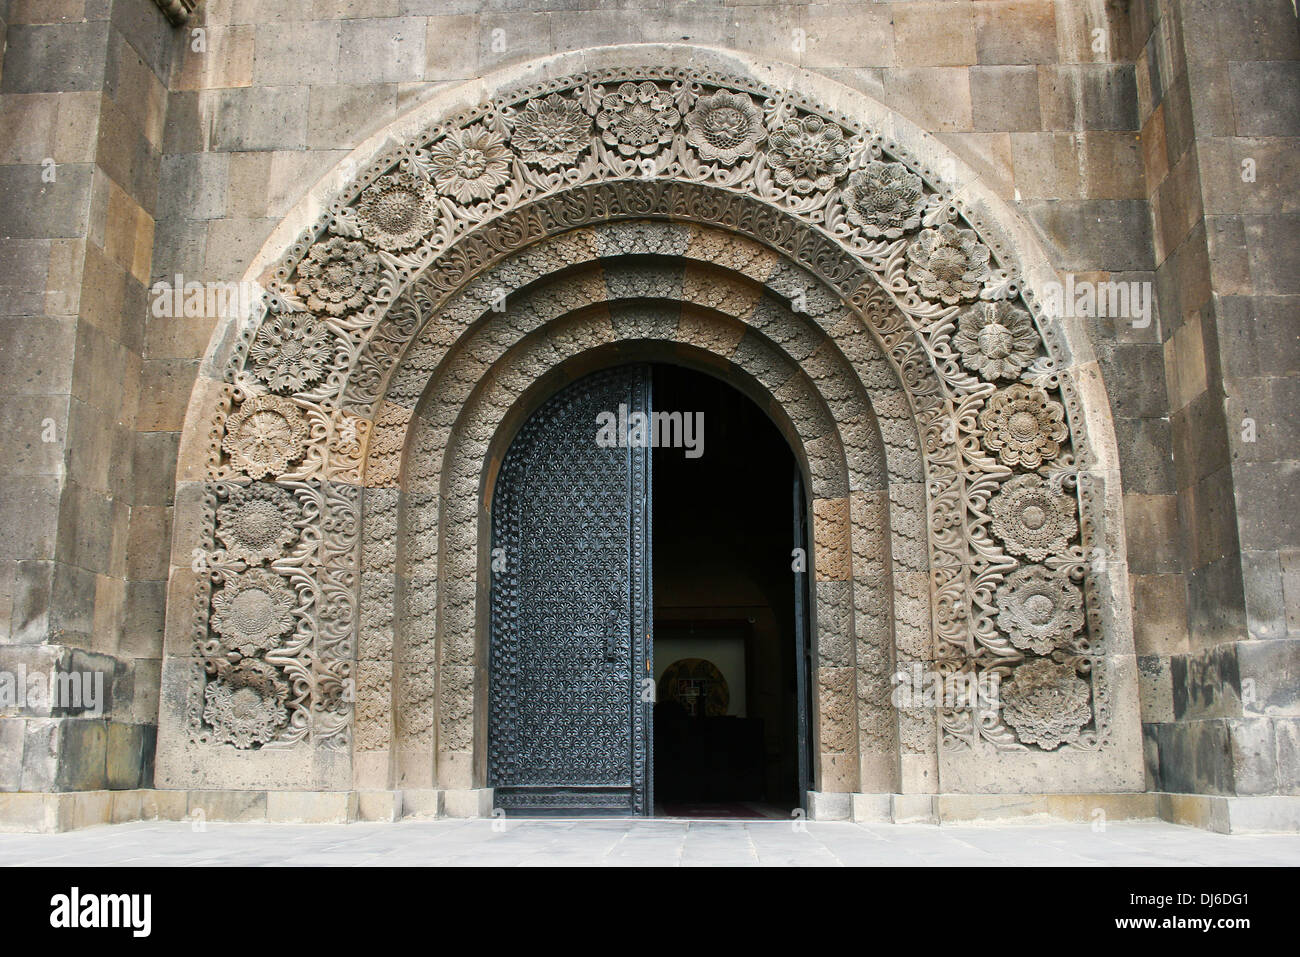 Museum entrance in Yerevan, Armenia. Stock Photo